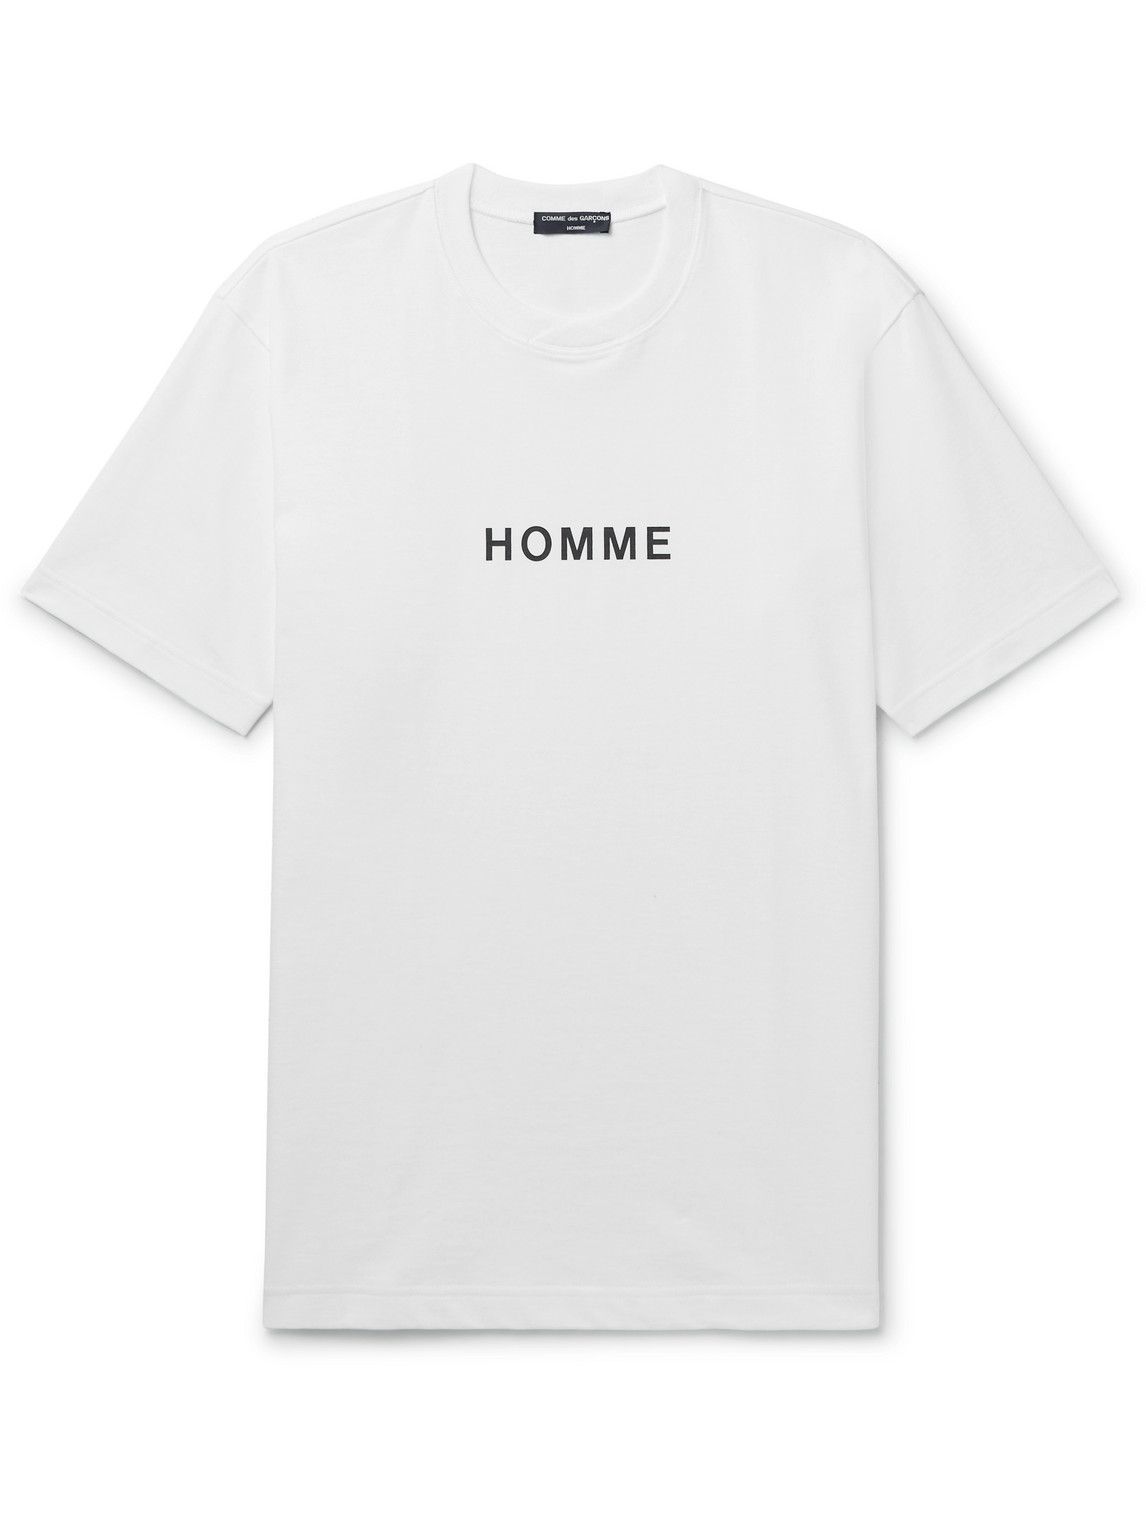 Comme des Garçons HOMME - Logo-Print Cotton-Jersey T-Shirt - White ...